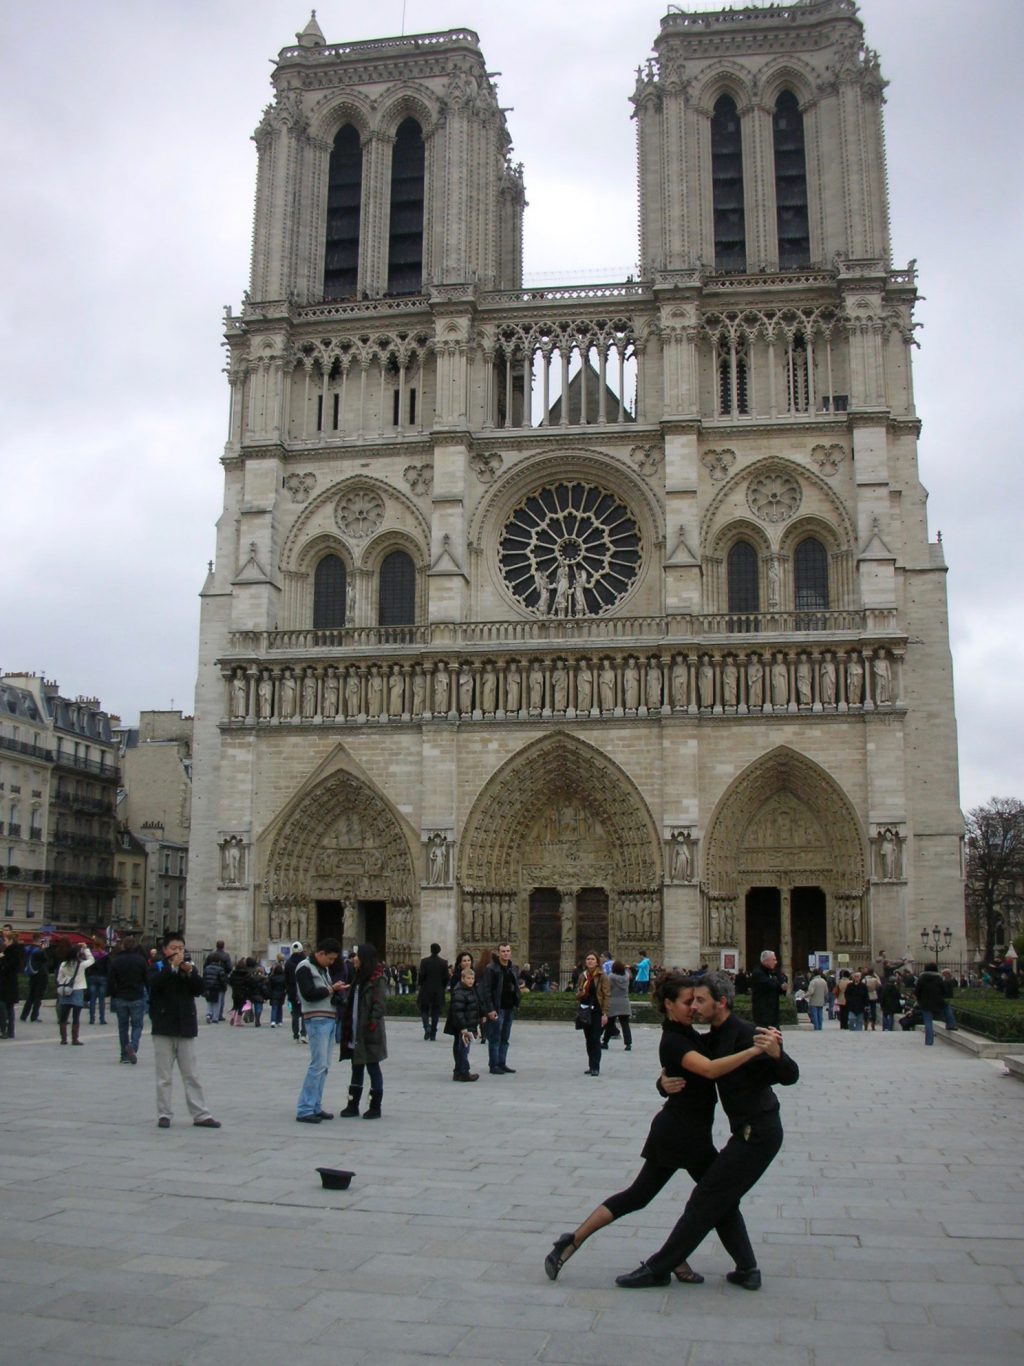 Cathédrale Notre-Dame de Paris　パリ・ノートルダム大聖堂